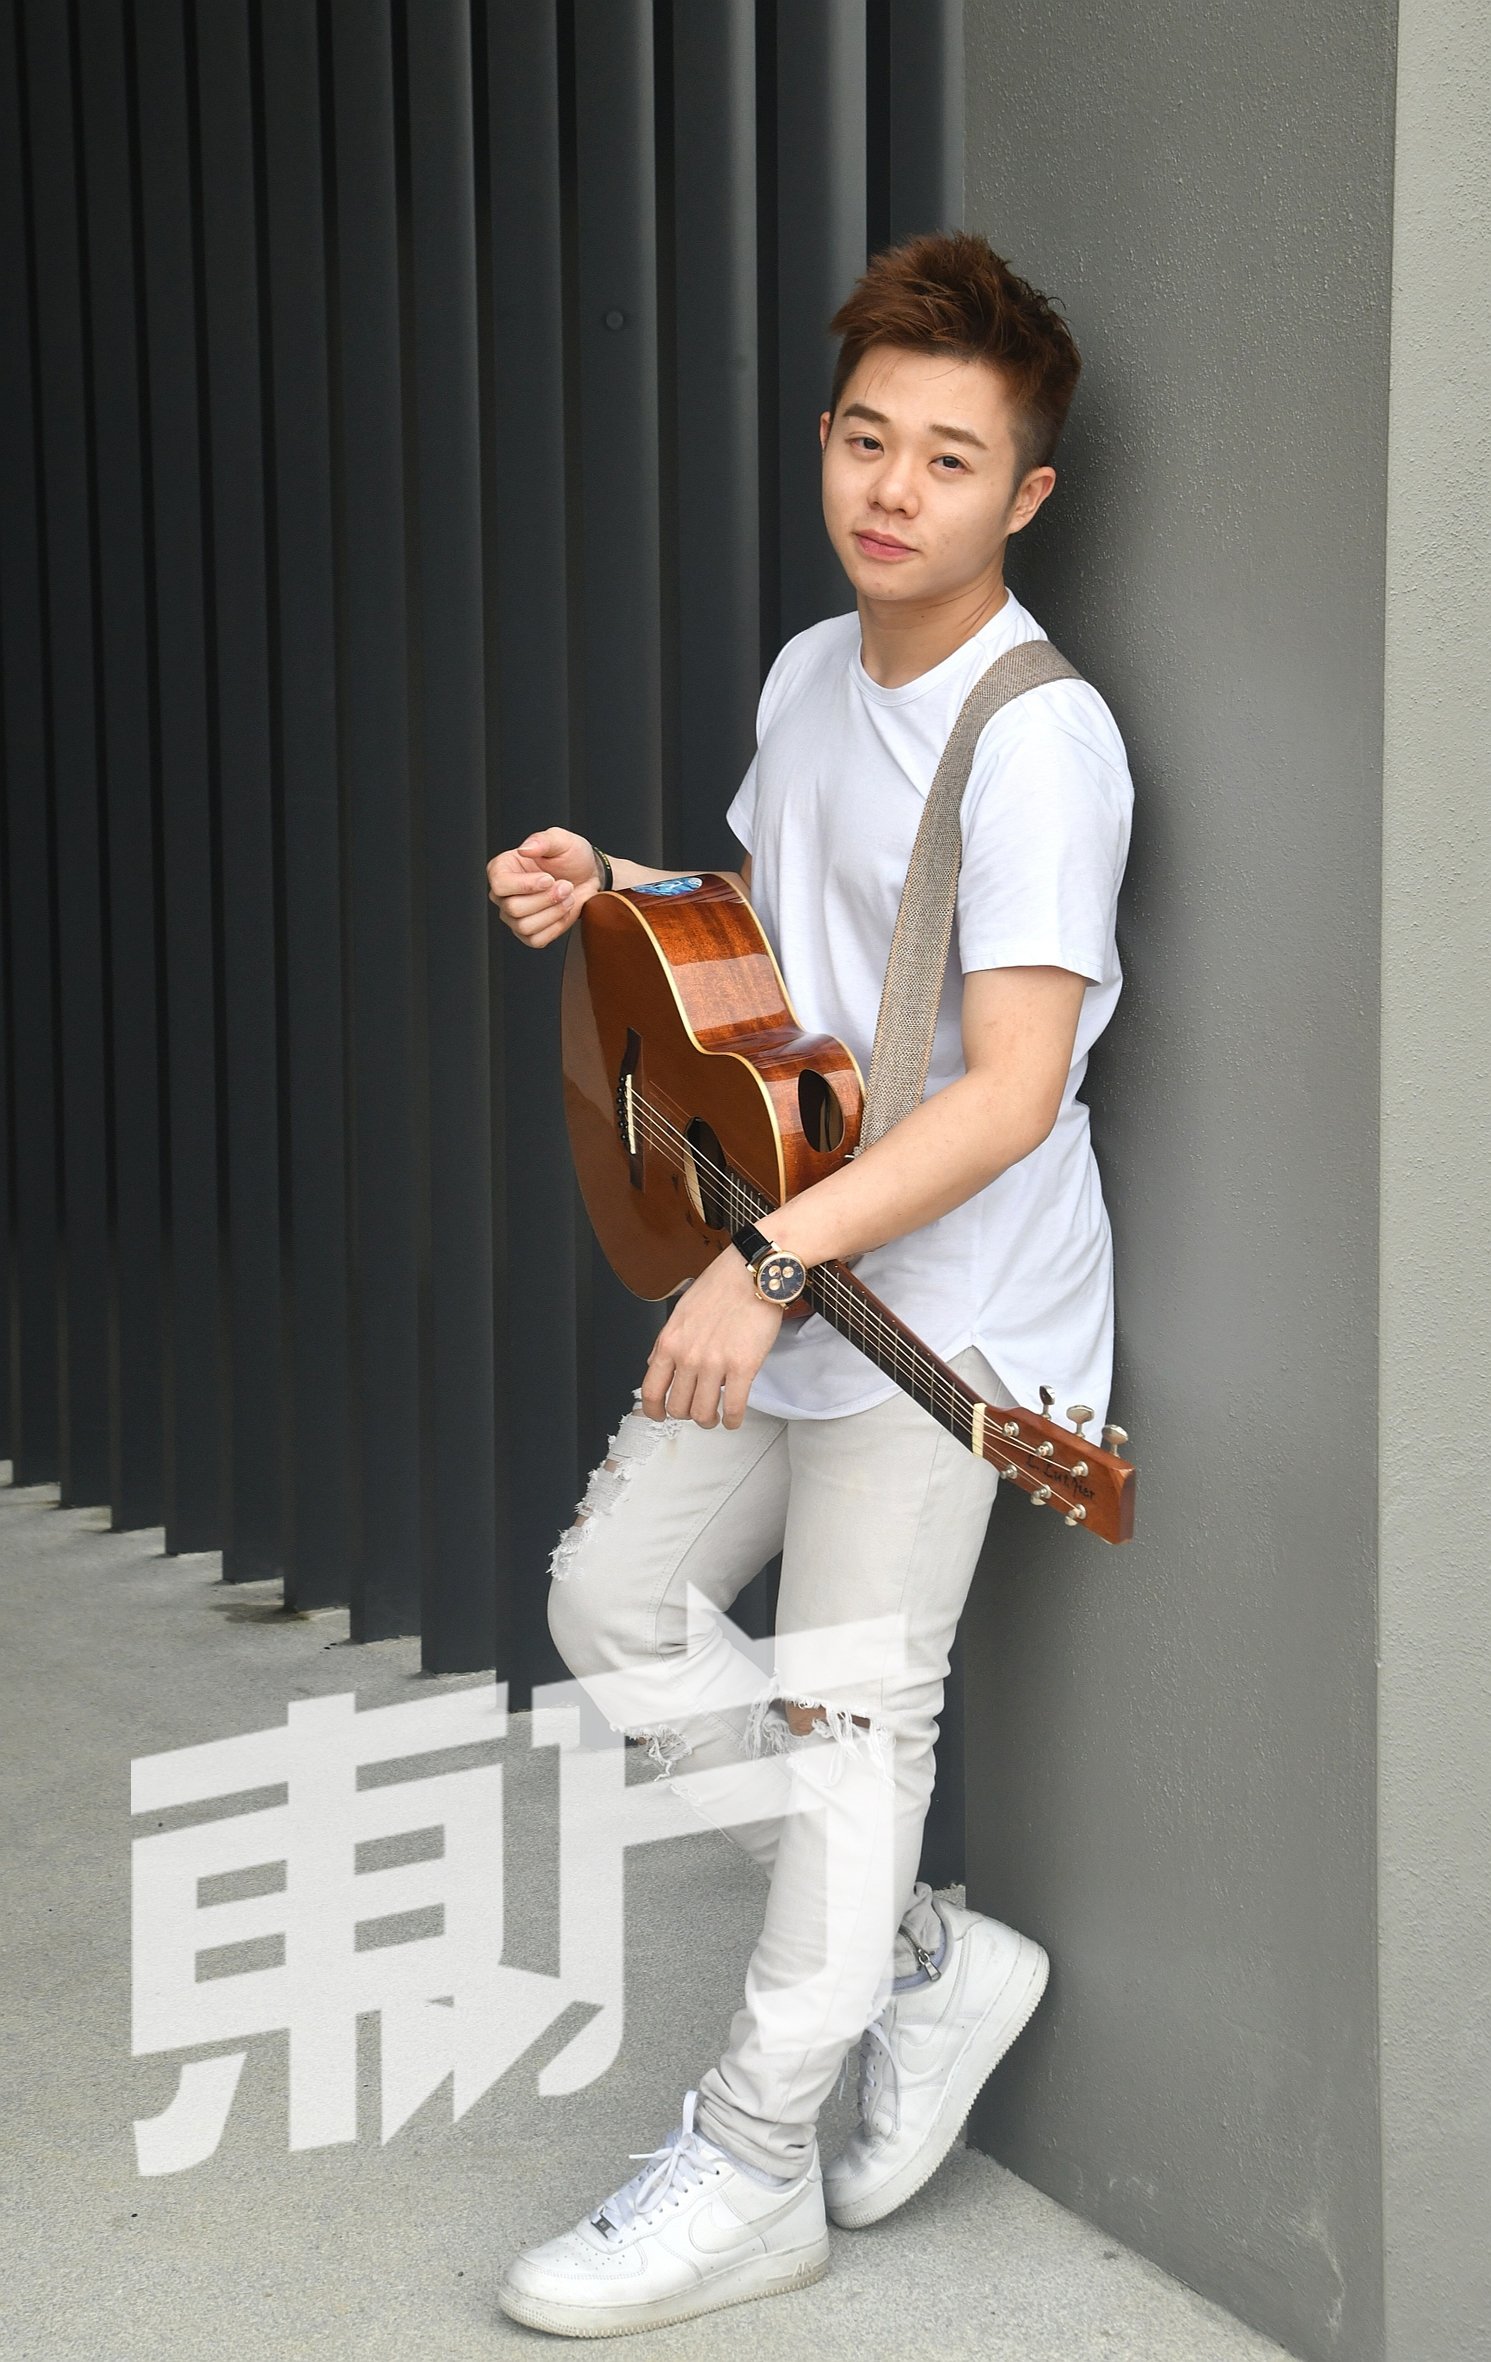 陈建宏在经营民宿时非常忙碌，每天都拖著疲惫的身体回家，让他完全失去了音乐创作心情和灵感。